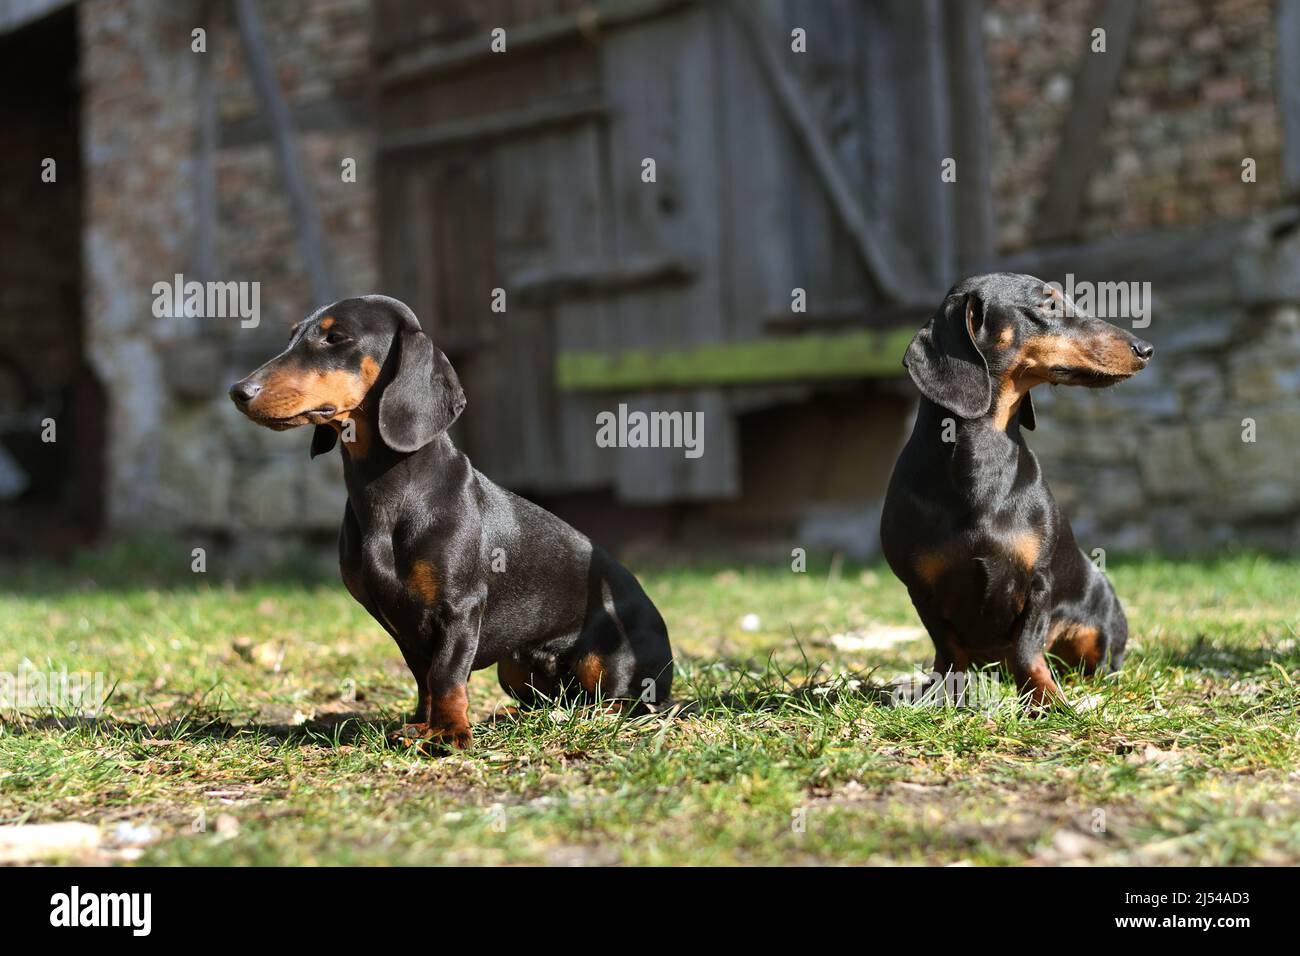 Kurzhaariger Dachshund, kurzhaariger Wursthund, Haushund (Canis lupus f. familiaris), zwei kurzhaarige Dachshunds, die vor einem Alten sitzen Stockfoto